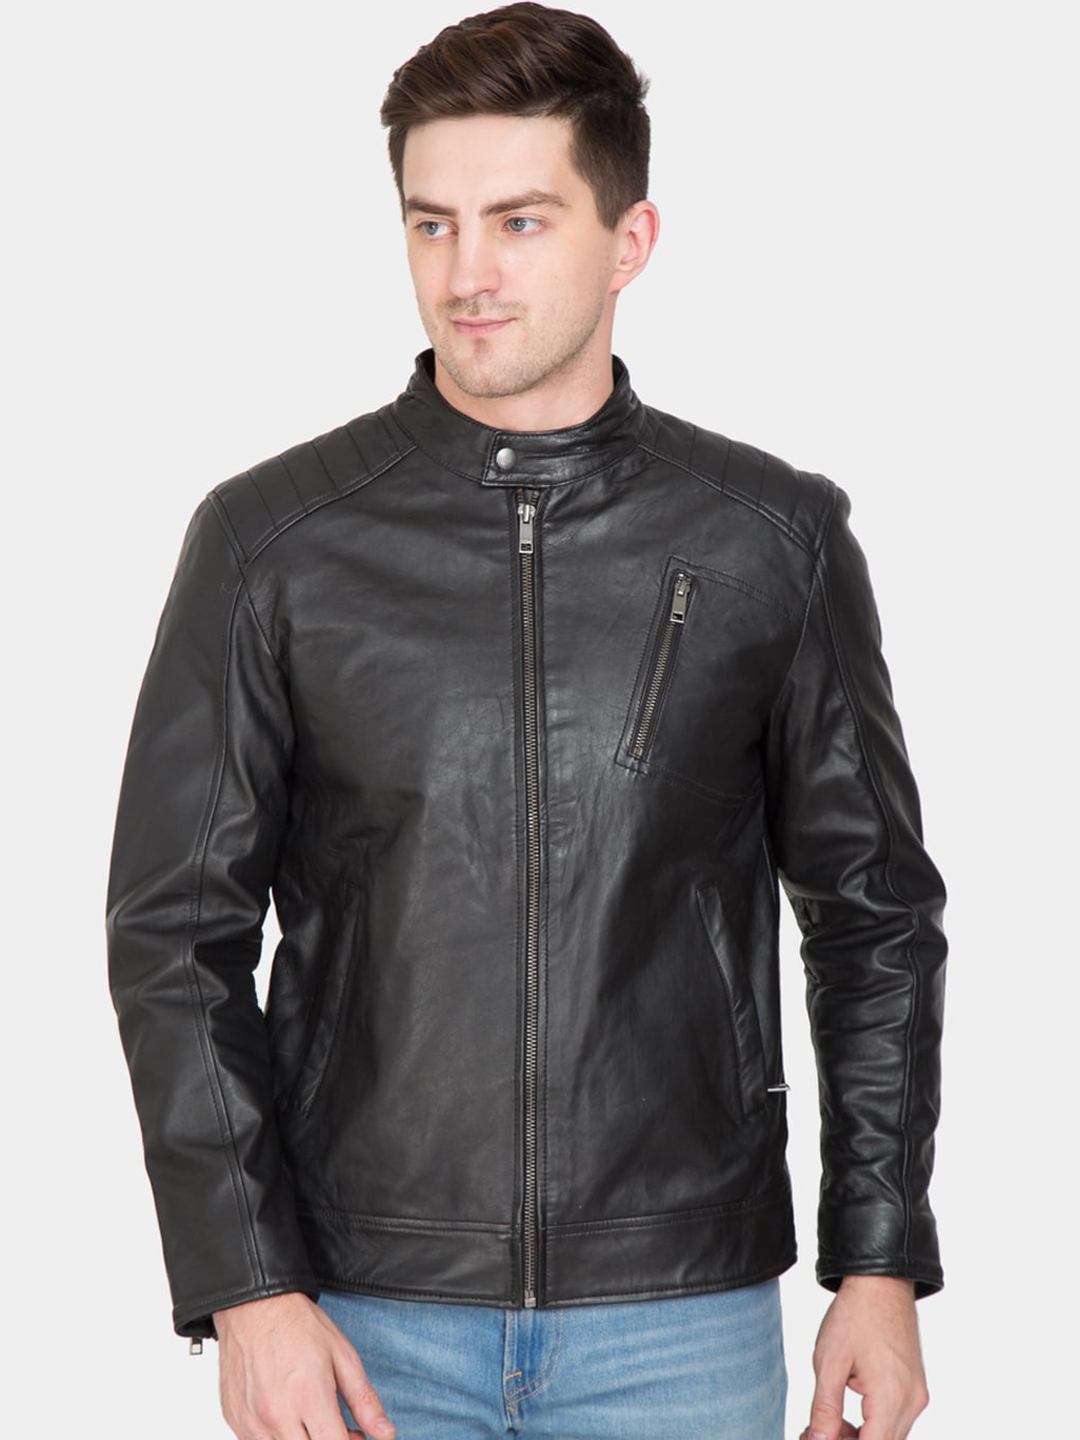 Buy Justanned Men Black Lightweight Leather Jacket - Jackets for Men ...